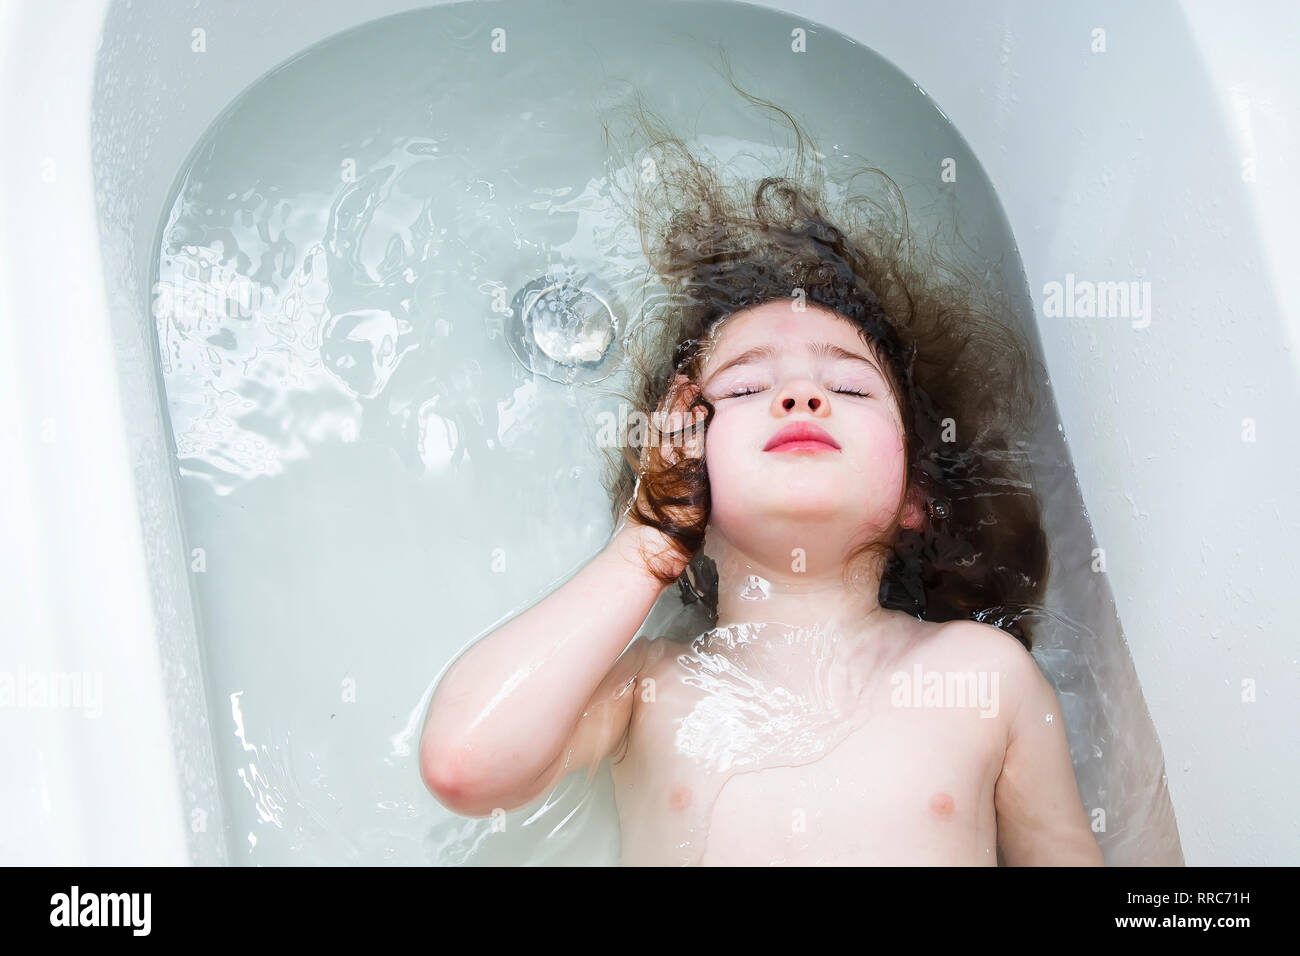 Bambina nuotare nel bagno con gli occhi chiusi. Foto Stock